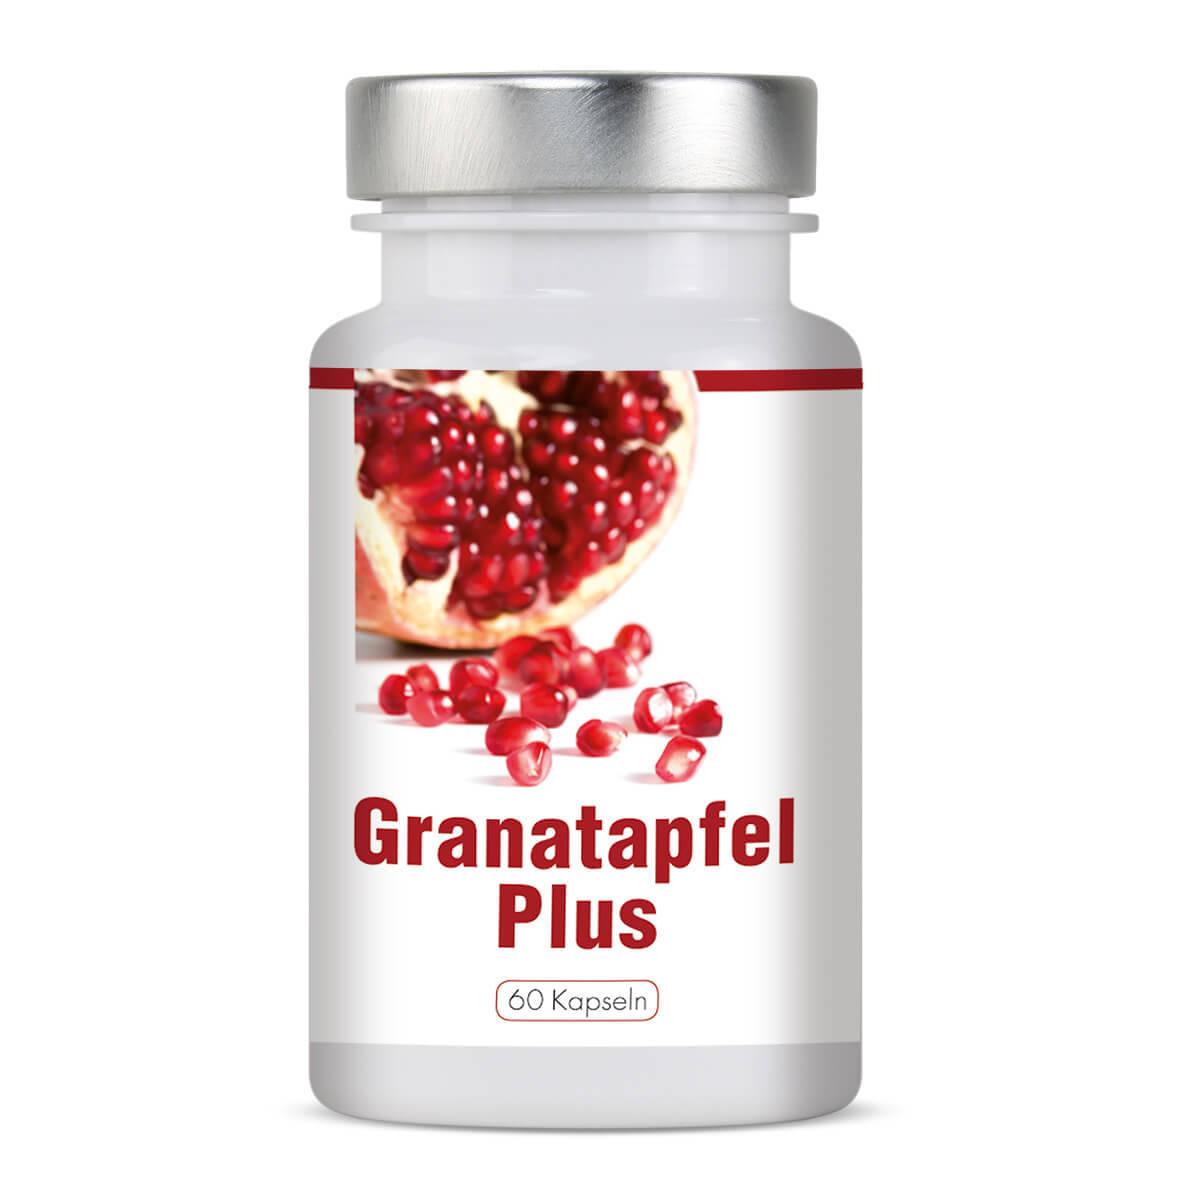 Granatapfel Plus